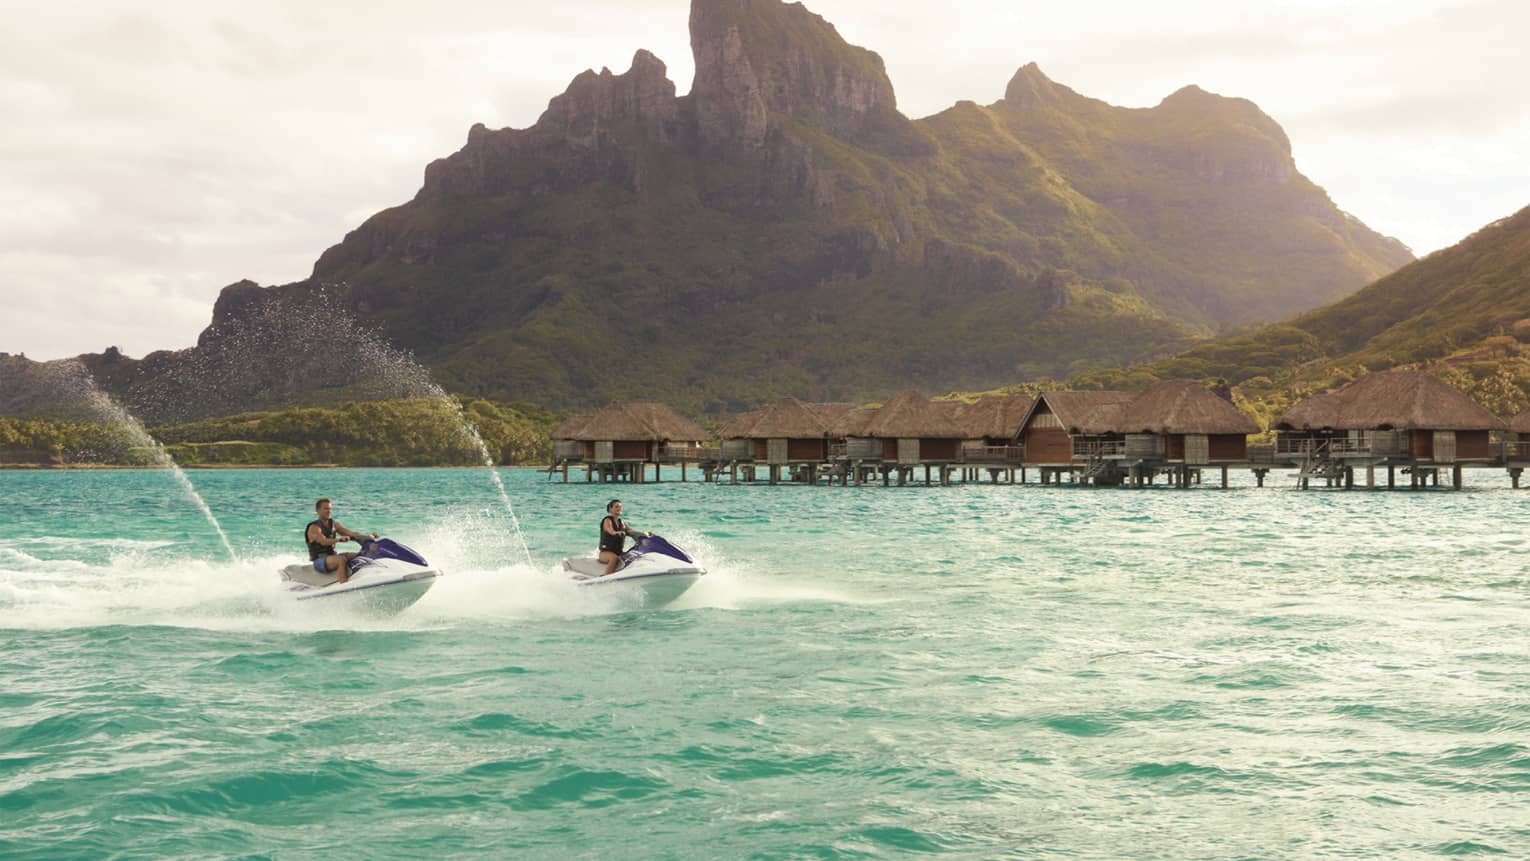 Two jet skis ride along lagoon past row of overwater bungalows, Bora Bora mountain